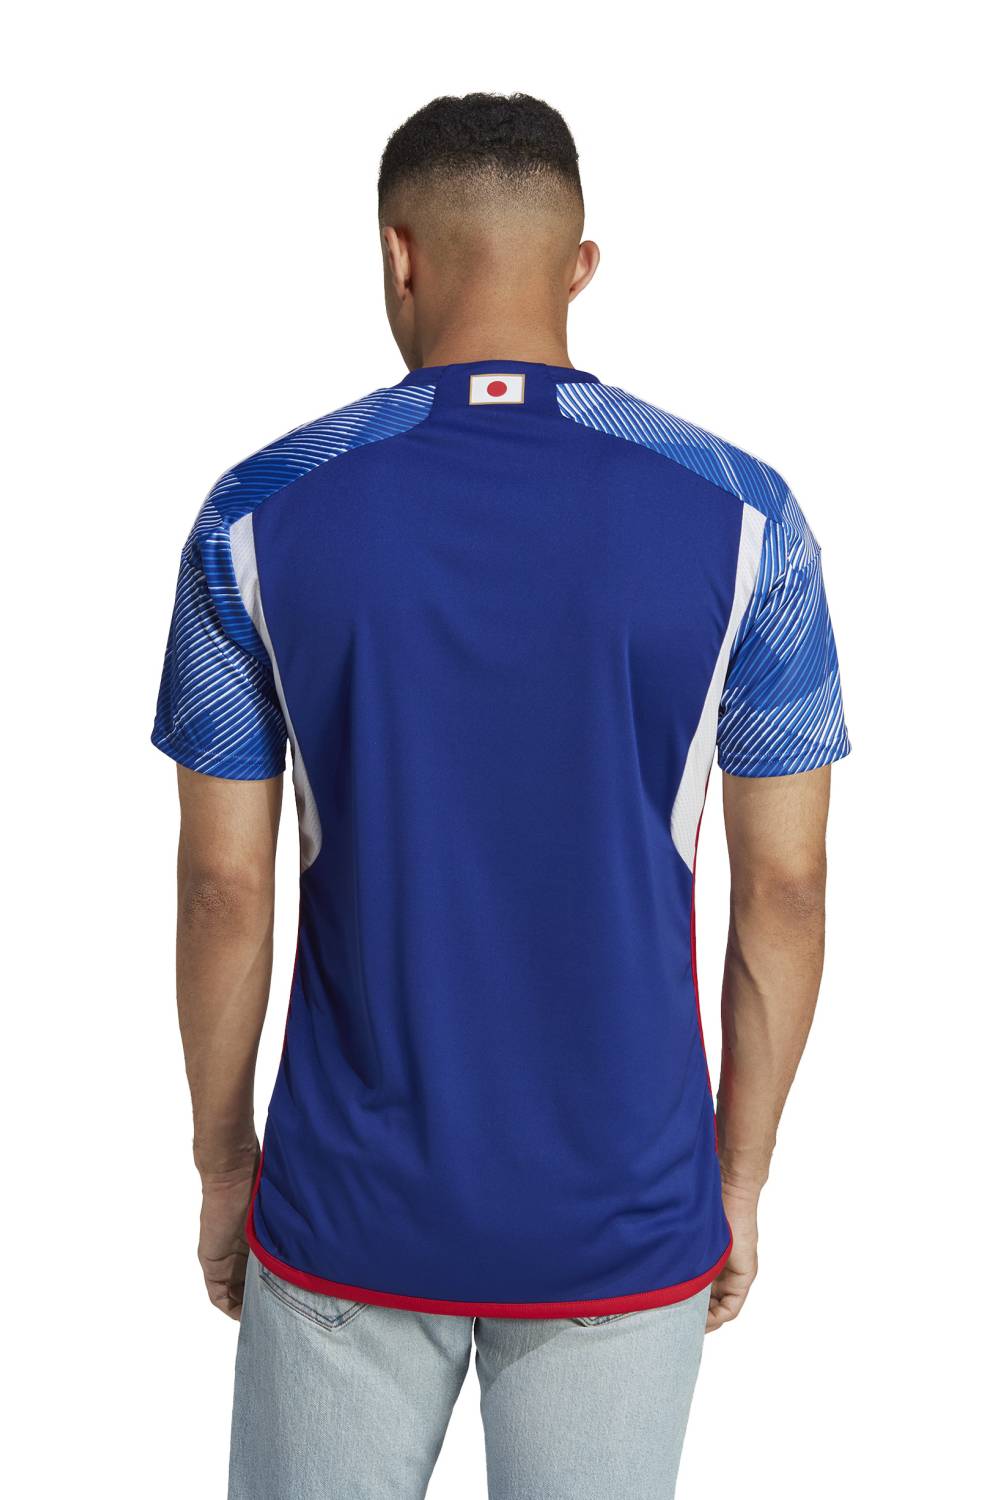 ADIDAS - Adidas Camiseta de Fútbol Japón Hombre